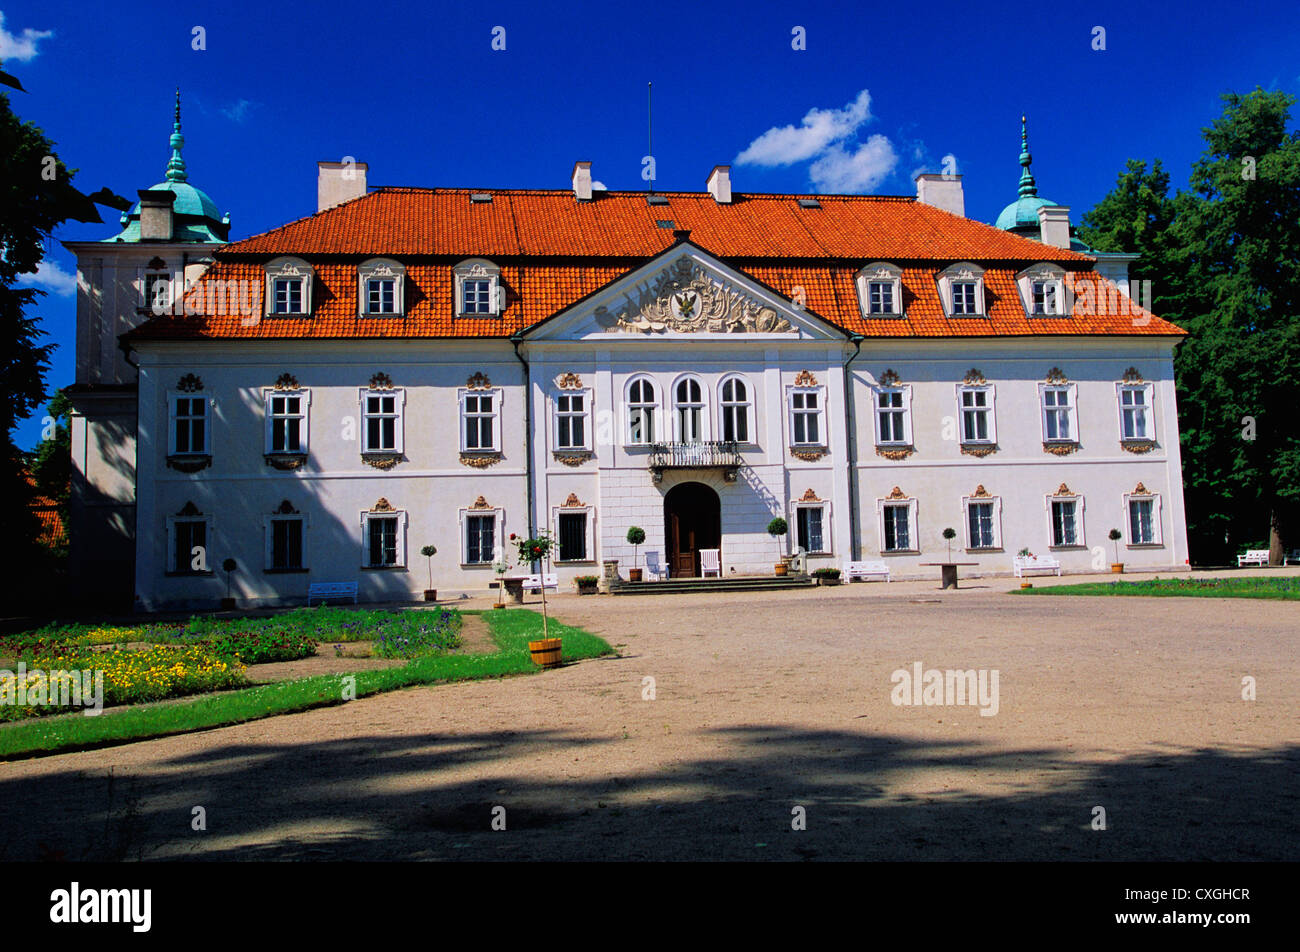 1690-1696, Poland --- Exterior View of Facade, Nieborow Palace Stock Photo